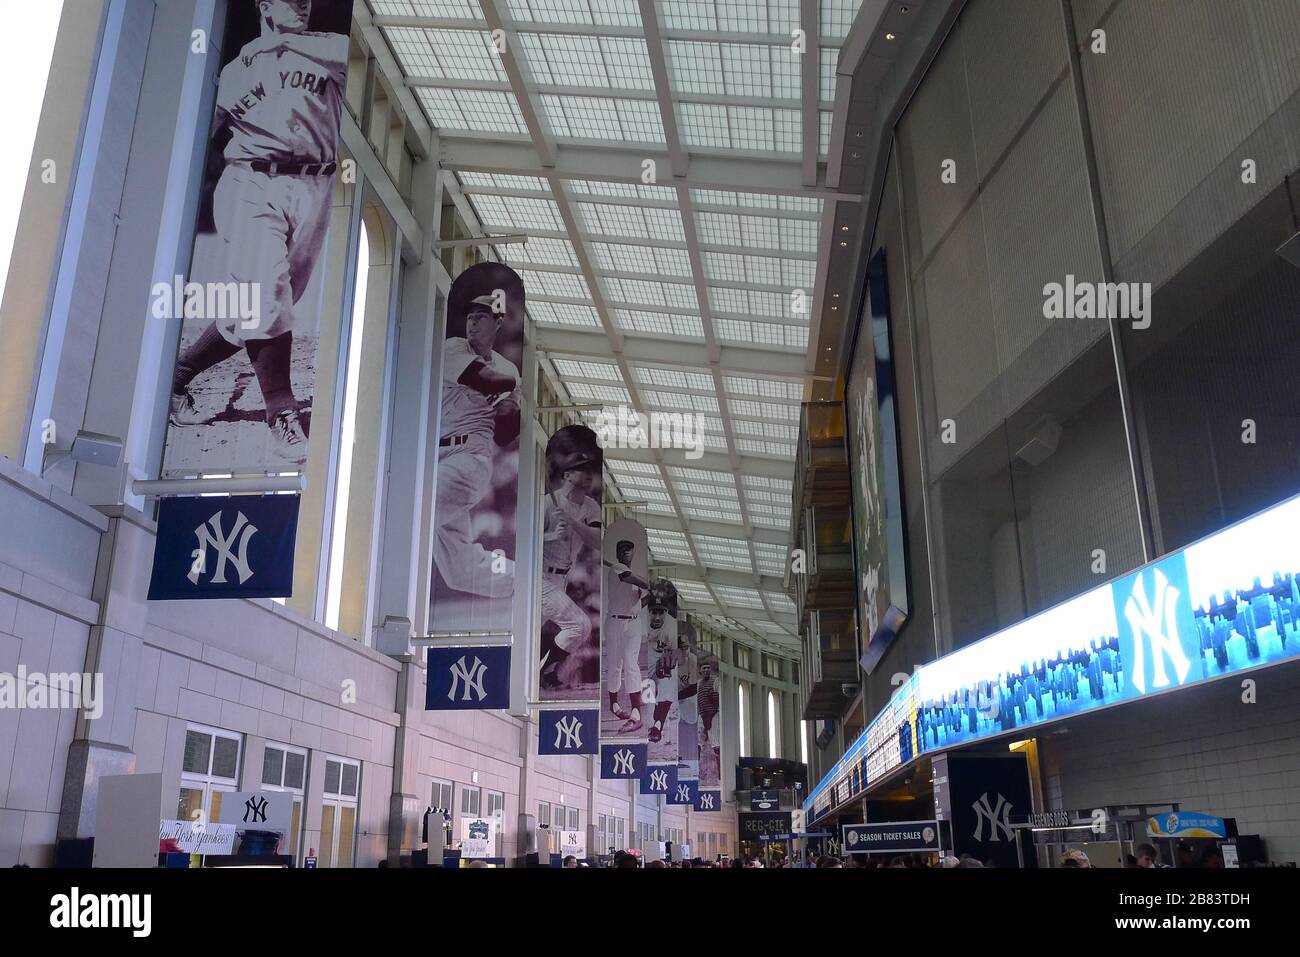 Photos suspendues de célèbres joueurs de baseball dans le couloir du New York Yankees Stadium Banque D'Images